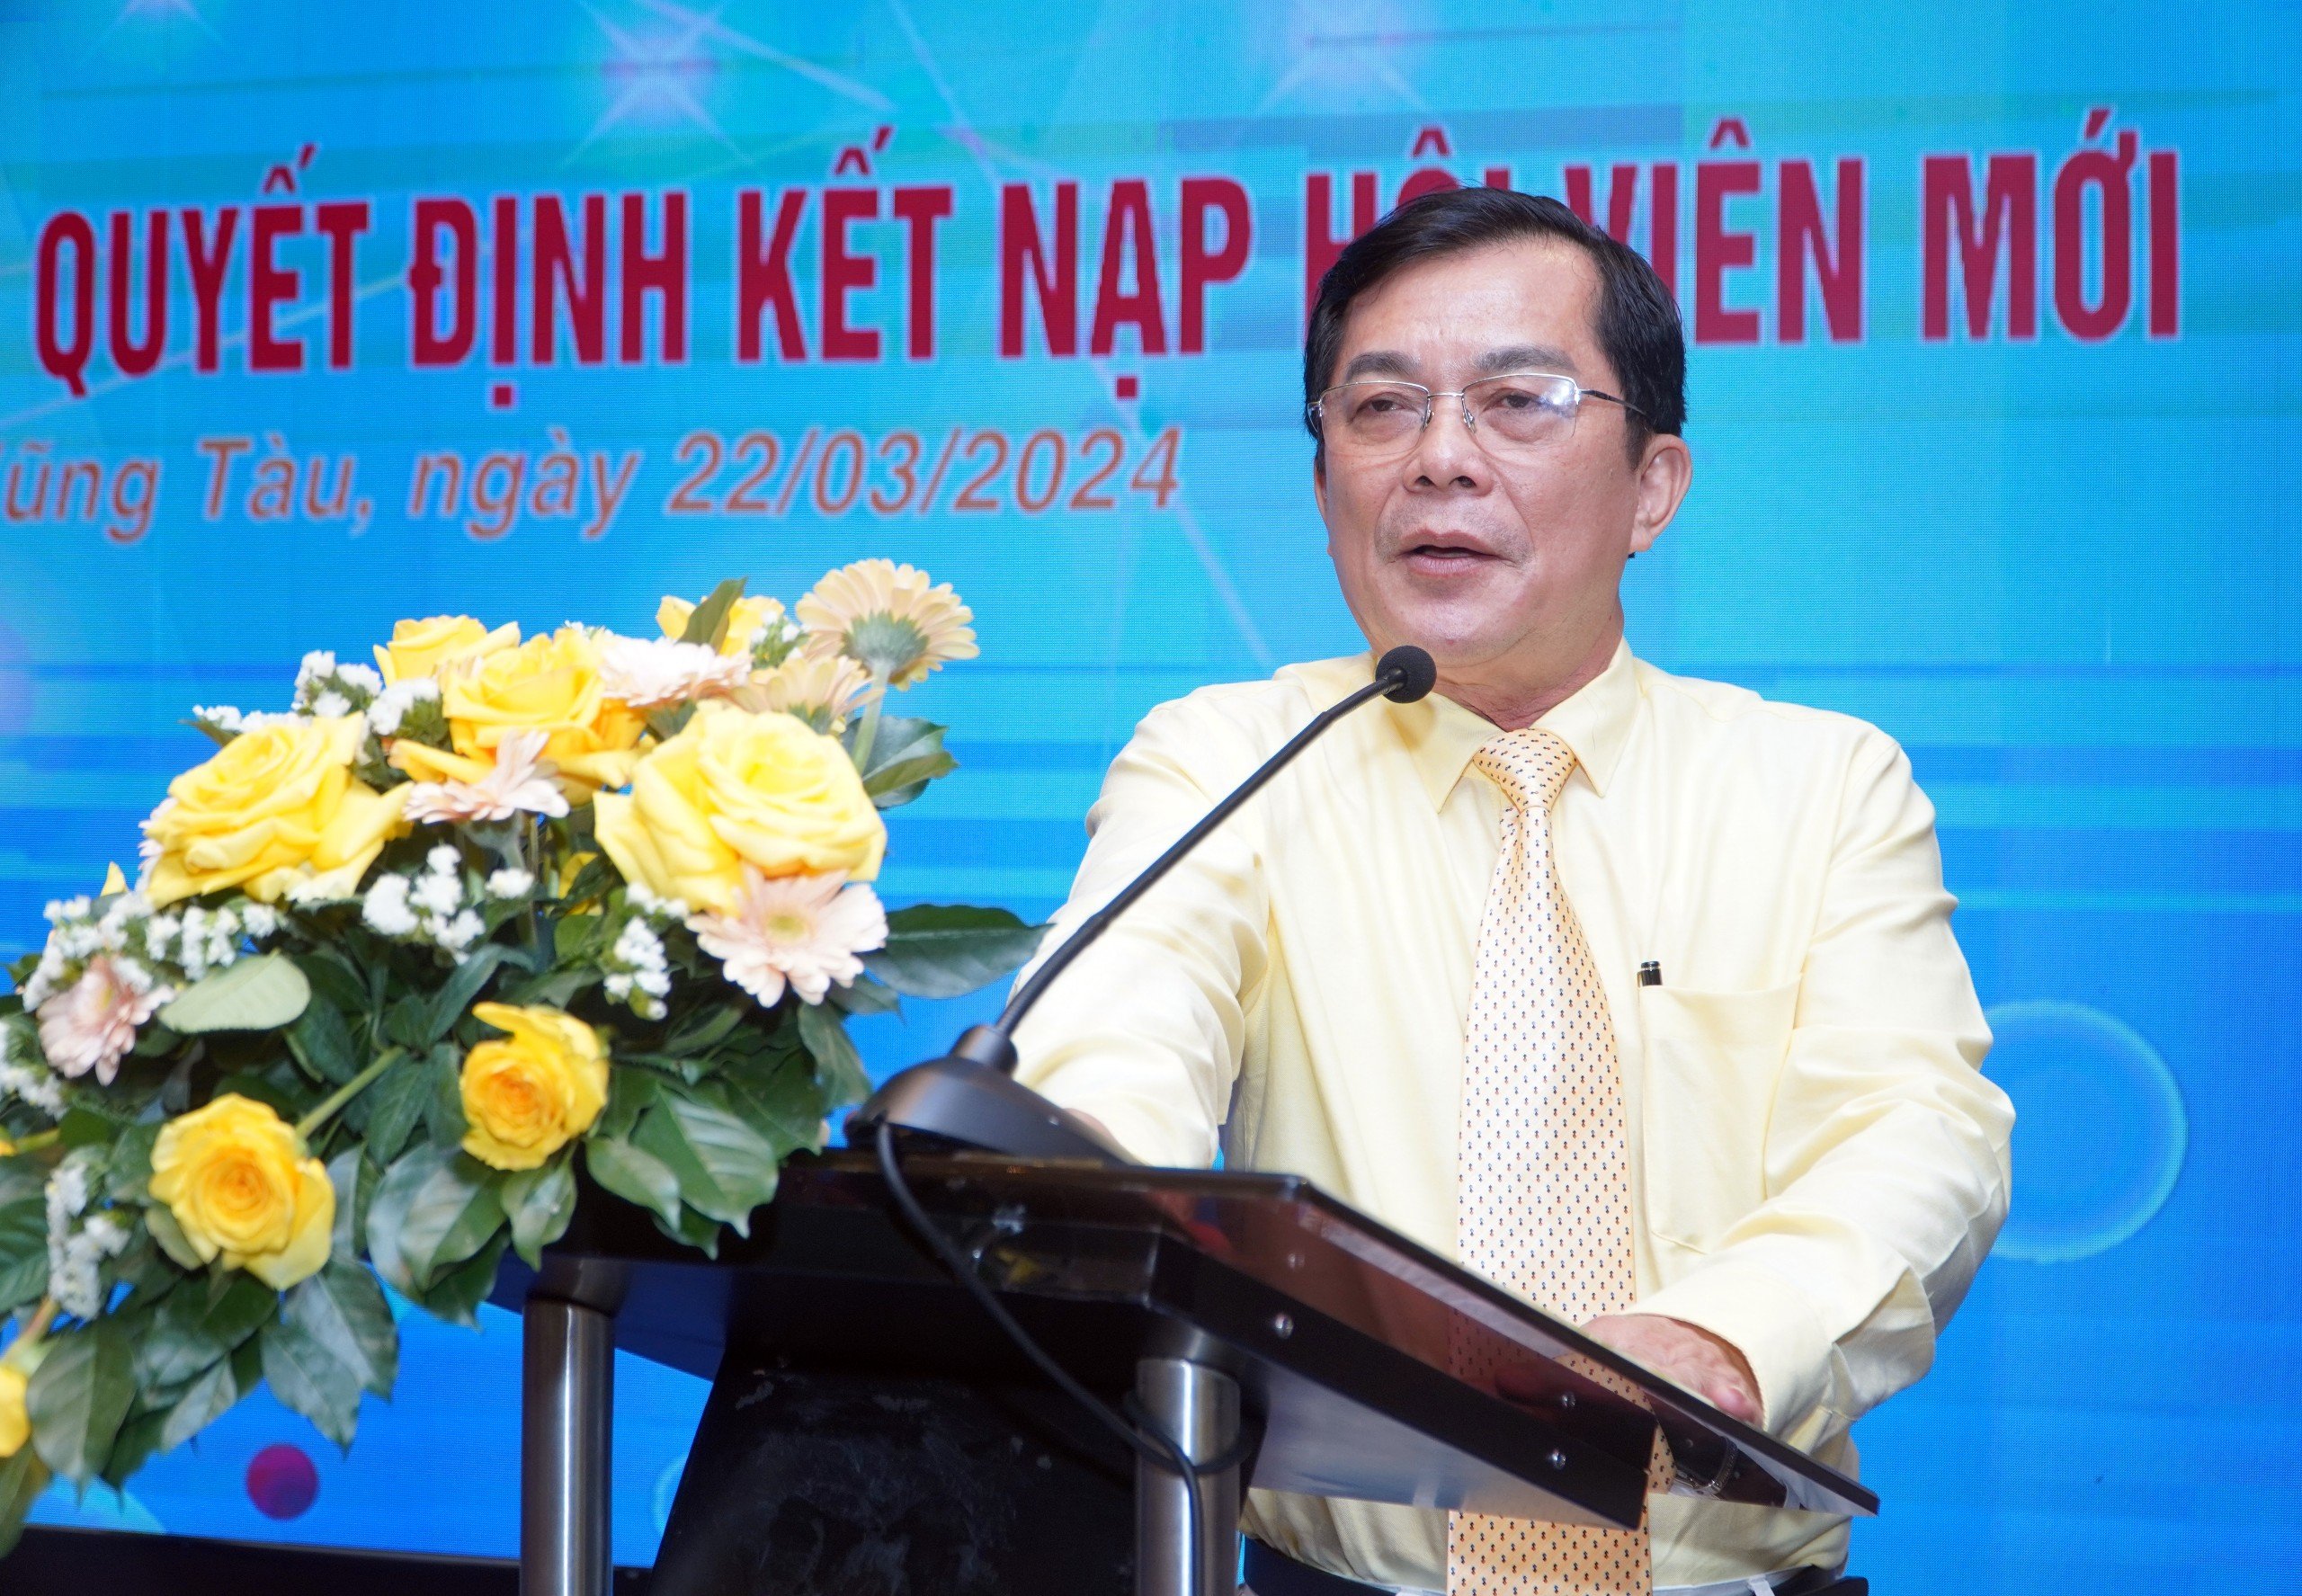 Ông Hồ Văn Lợi, đại diện Công ty TNHH Lữ hành Đất Đỏ tour, thành viên mới của Hiệp hội DNNNV tỉnh phát biểu tại buổi gặp mặt.